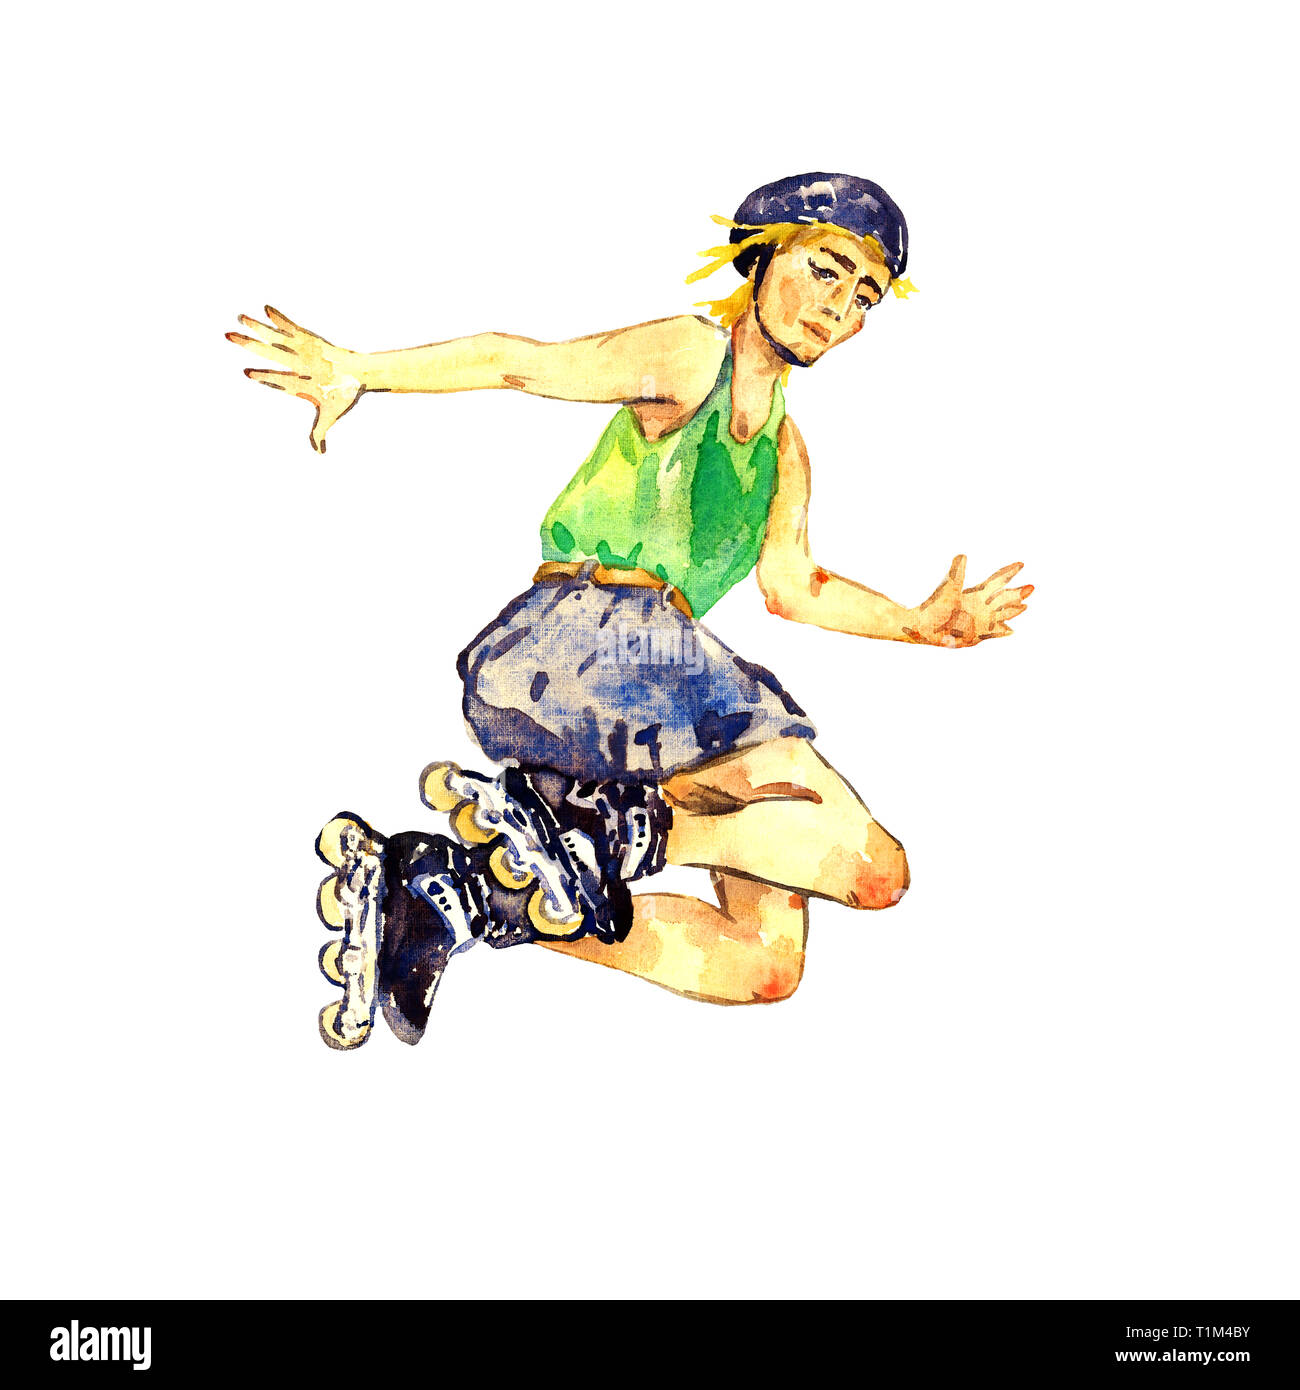 Junge in Rollschuhen und Helm springen, Handgemalten Aquarell Illustration, auf weißem Hintergrund Stockfoto